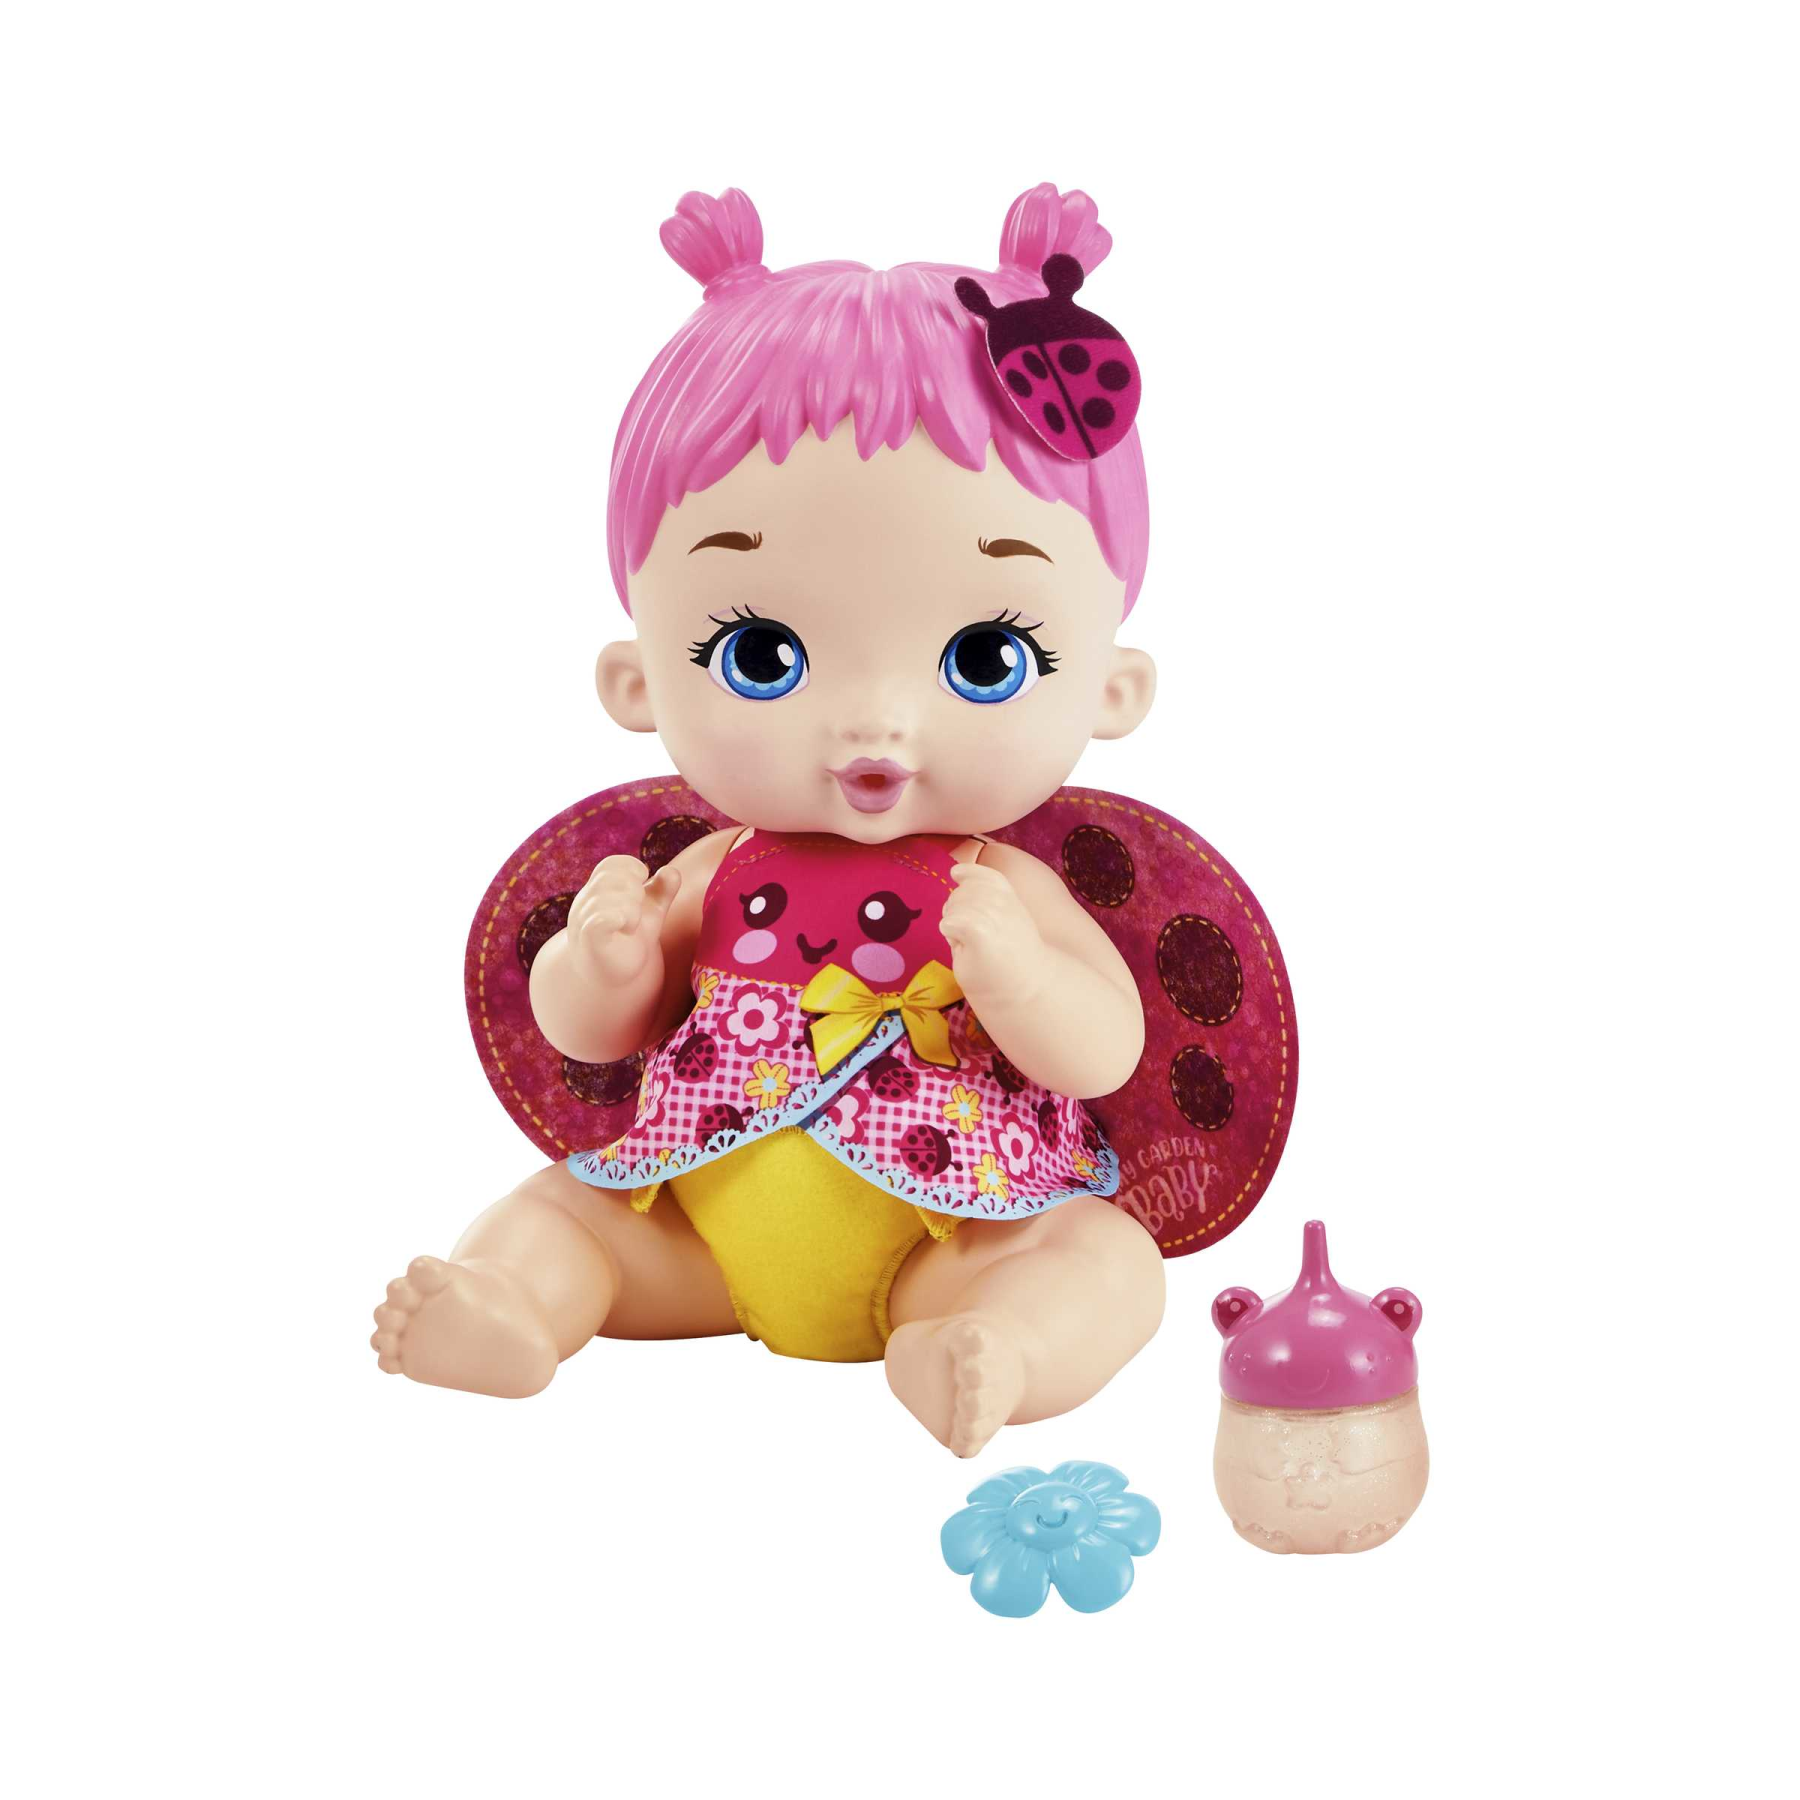 My garden baby - bambola junior coccinella con ali soffici e dolce profumo  floreale, con un pannolino riutilizzabile, biberon e accessori, giocattolo  per bambini, 3+ anni, hmx27 - Toys Center